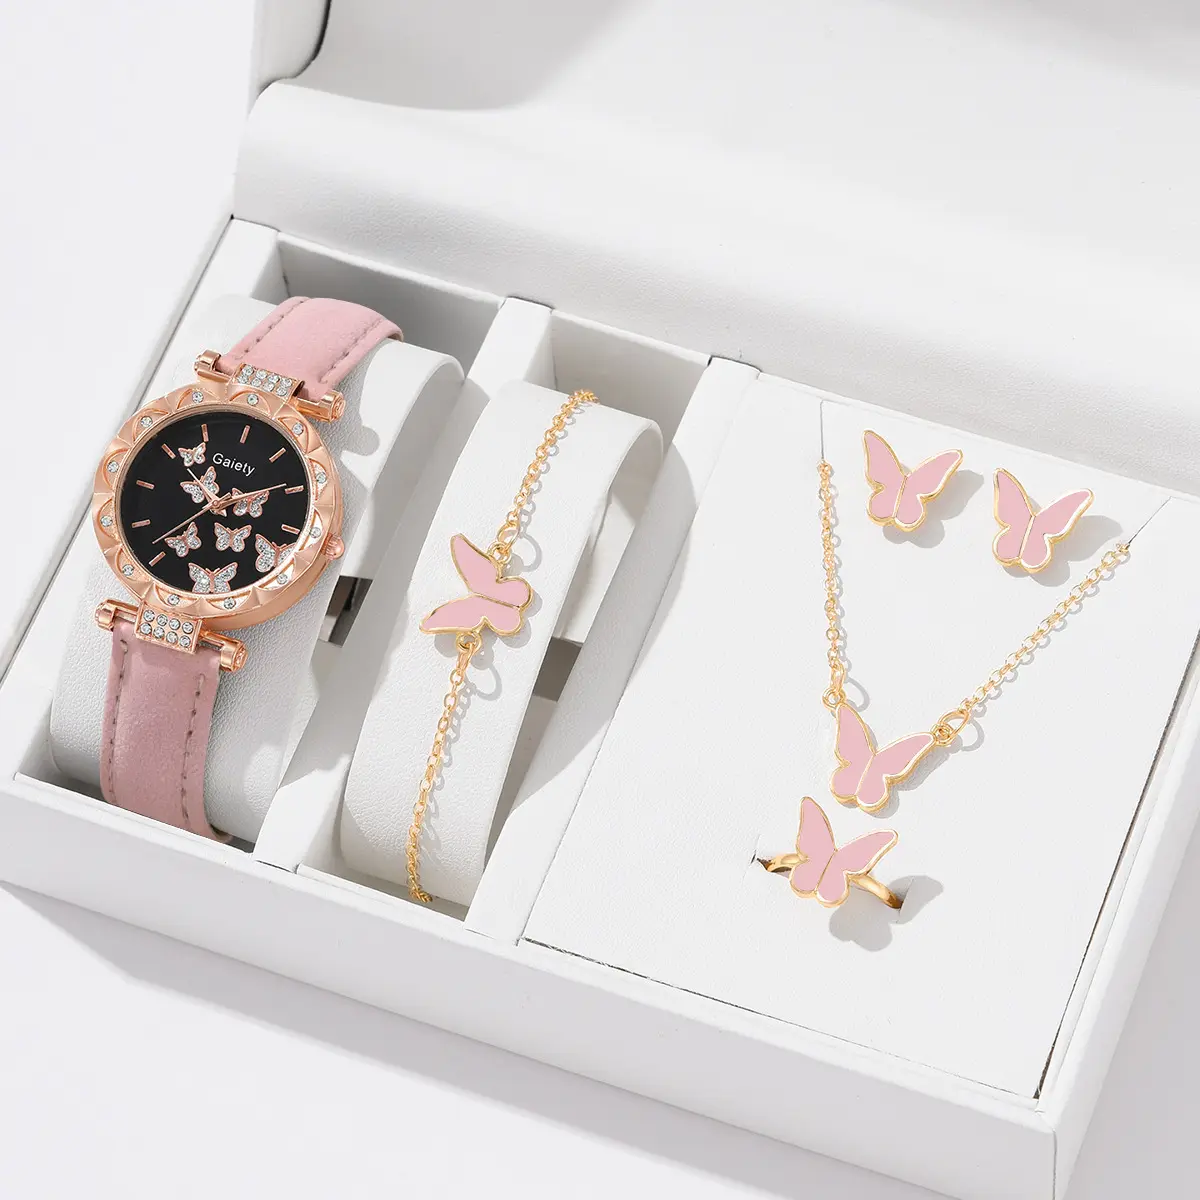 New explosive women's watch fashion personality simple watch butterfly digital belt watch set